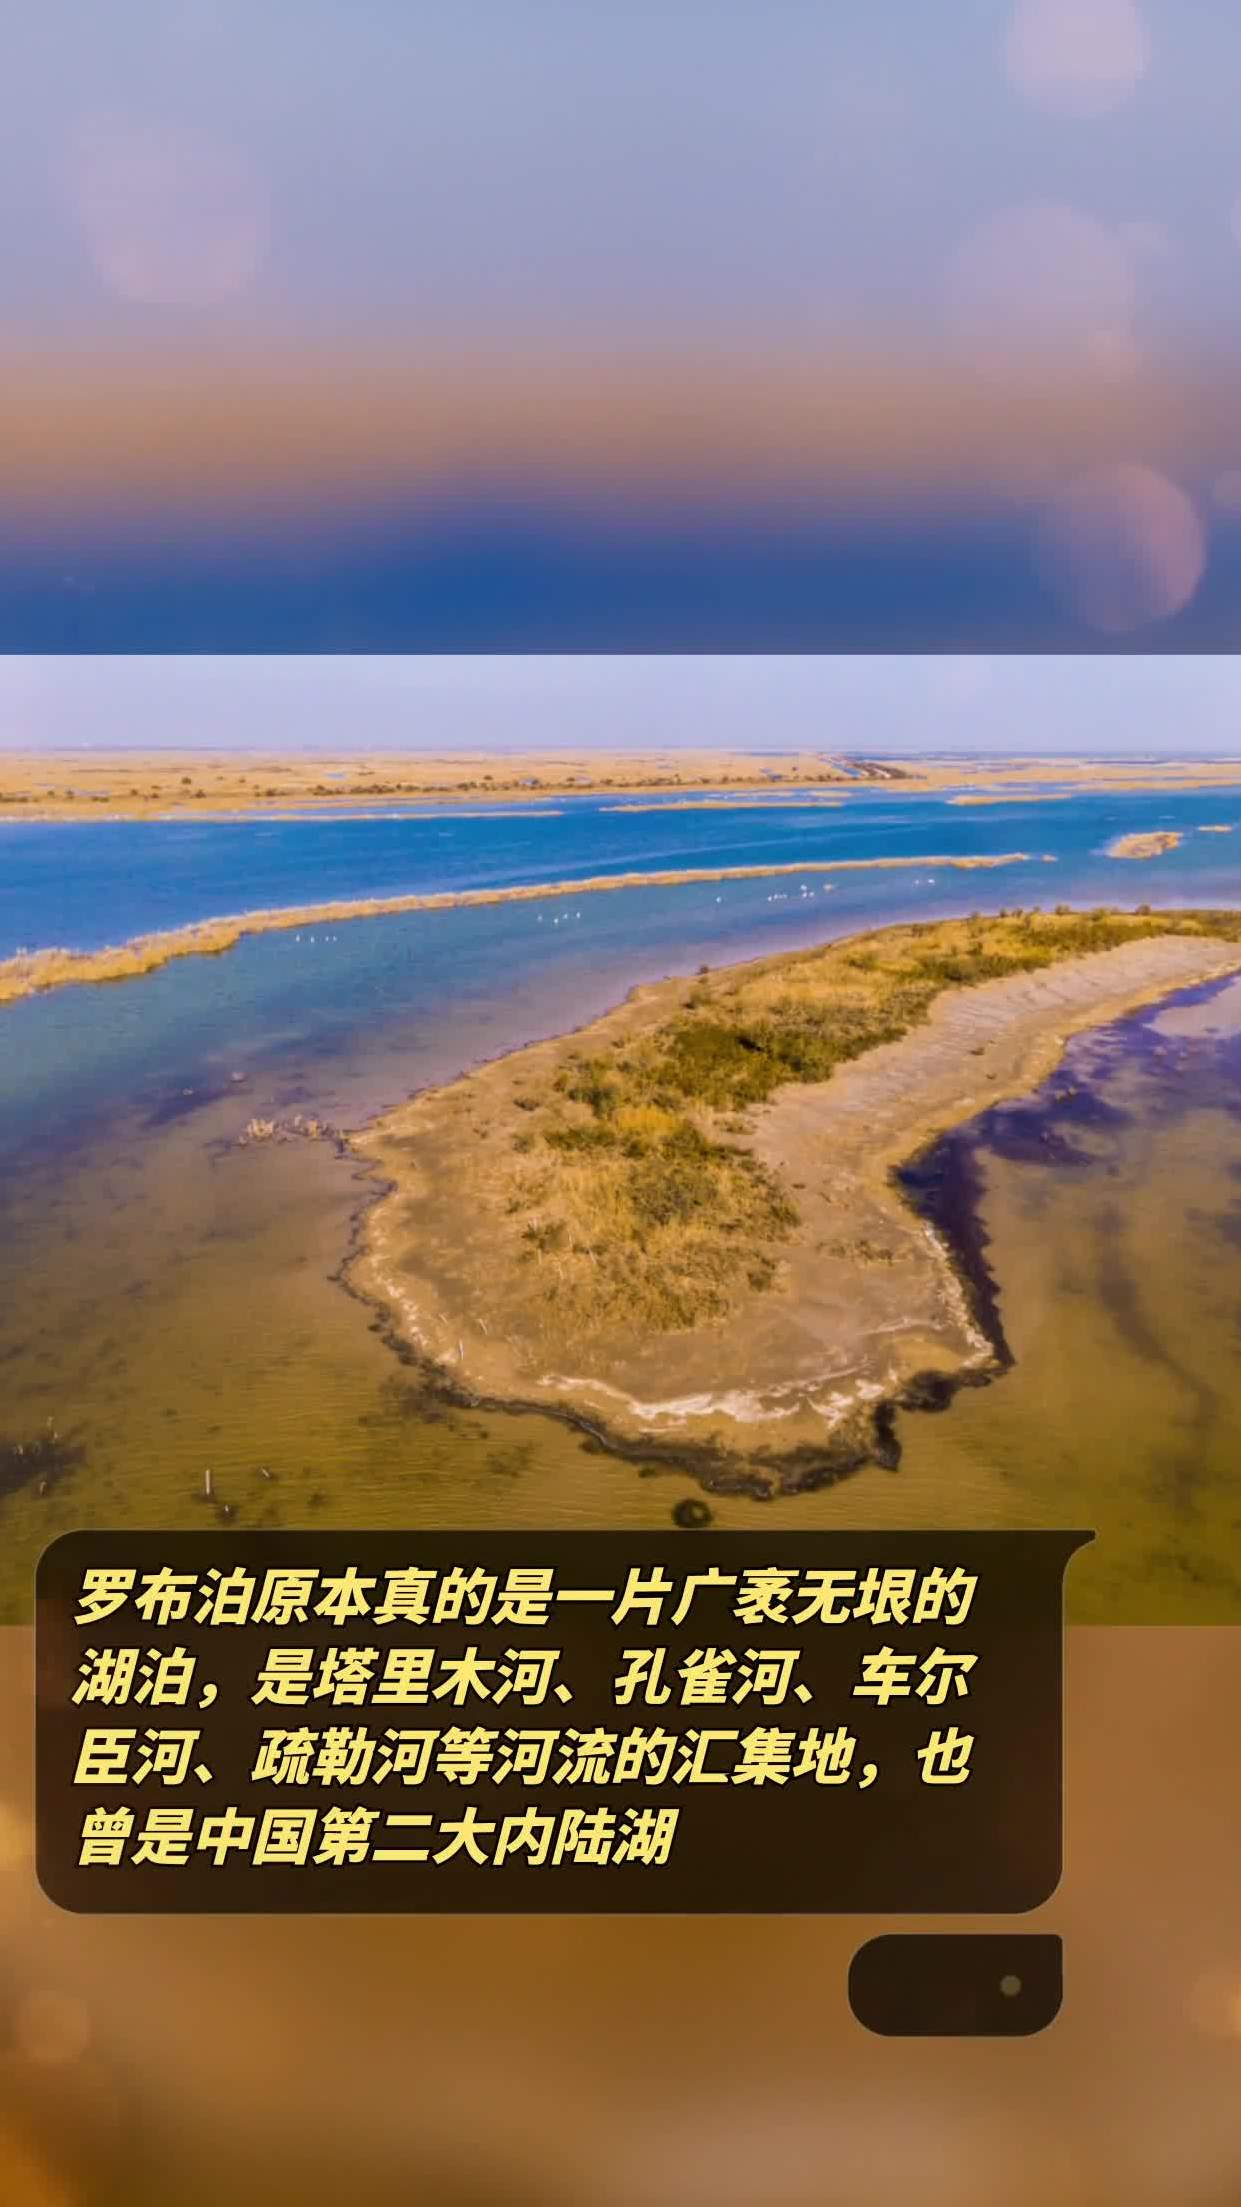 孔雀河,车尔臣河,疏勒河等河流的汇集地,也曾是中国第二大内陆湖